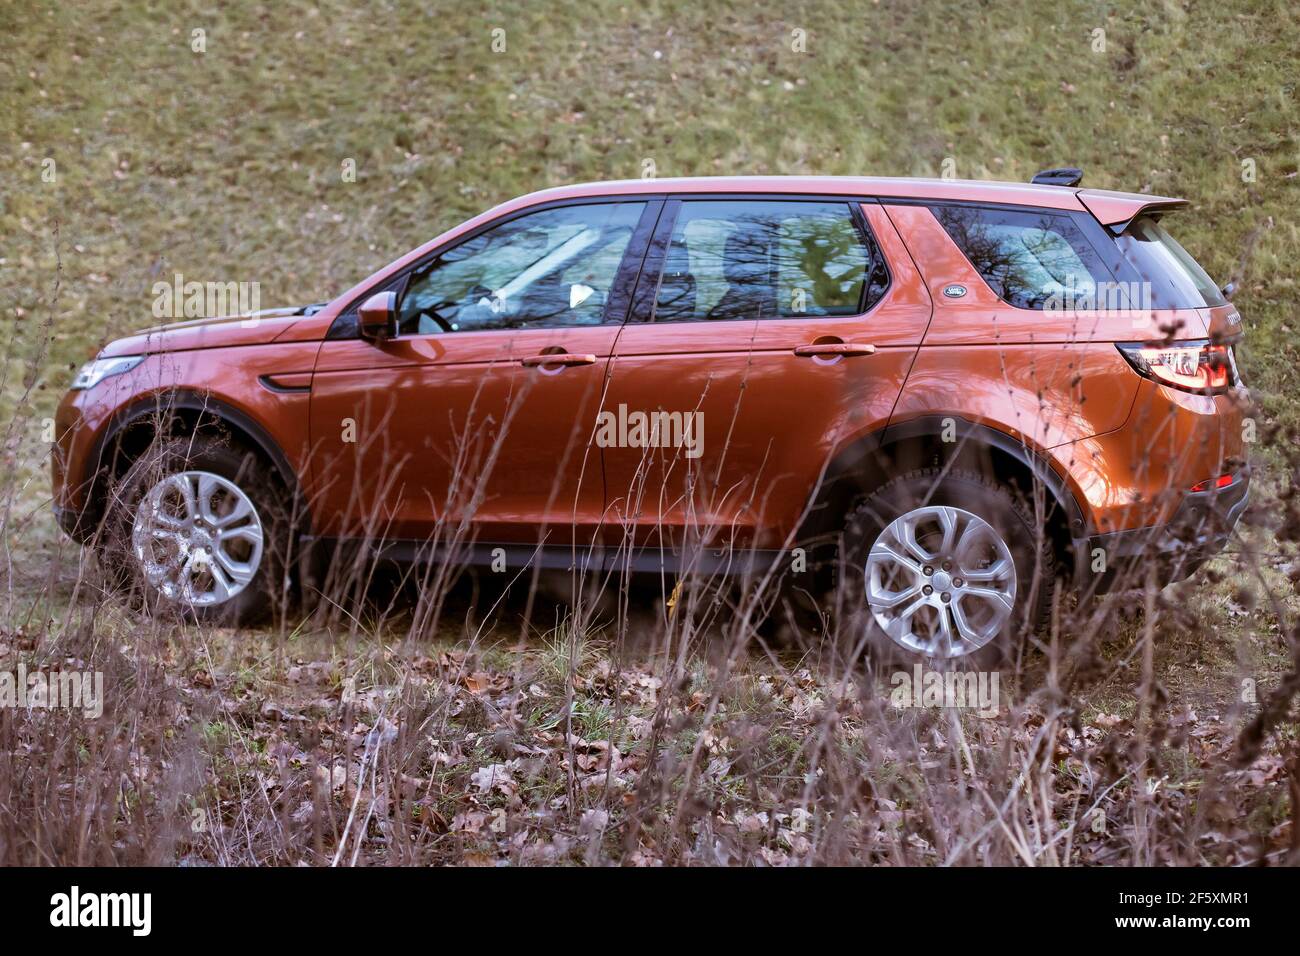 Moskau, Russland - 20. Dezember 2019: Seitenansicht des neuen Premium england suv. Land Rover Discovery Sport im Wald geparkt. Orange Allradantrieb Auto steht auf dem Boden. Stockfoto